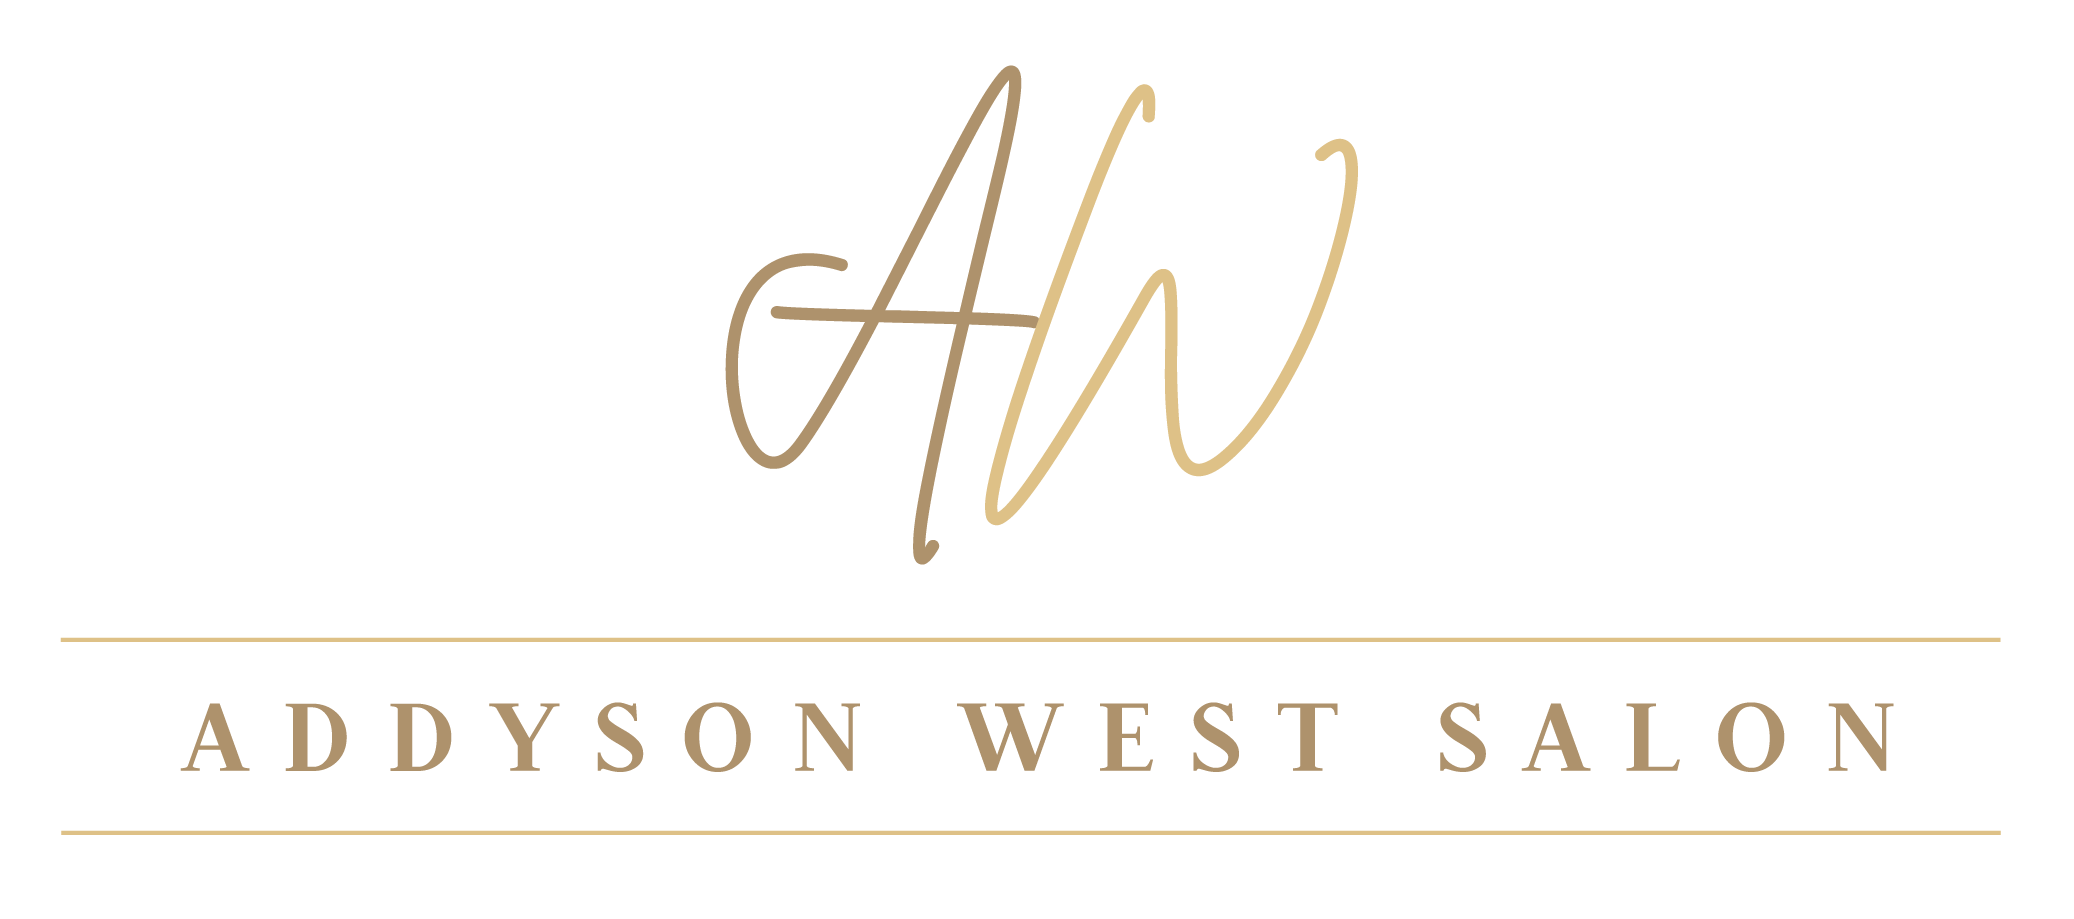 Addyson West Salon